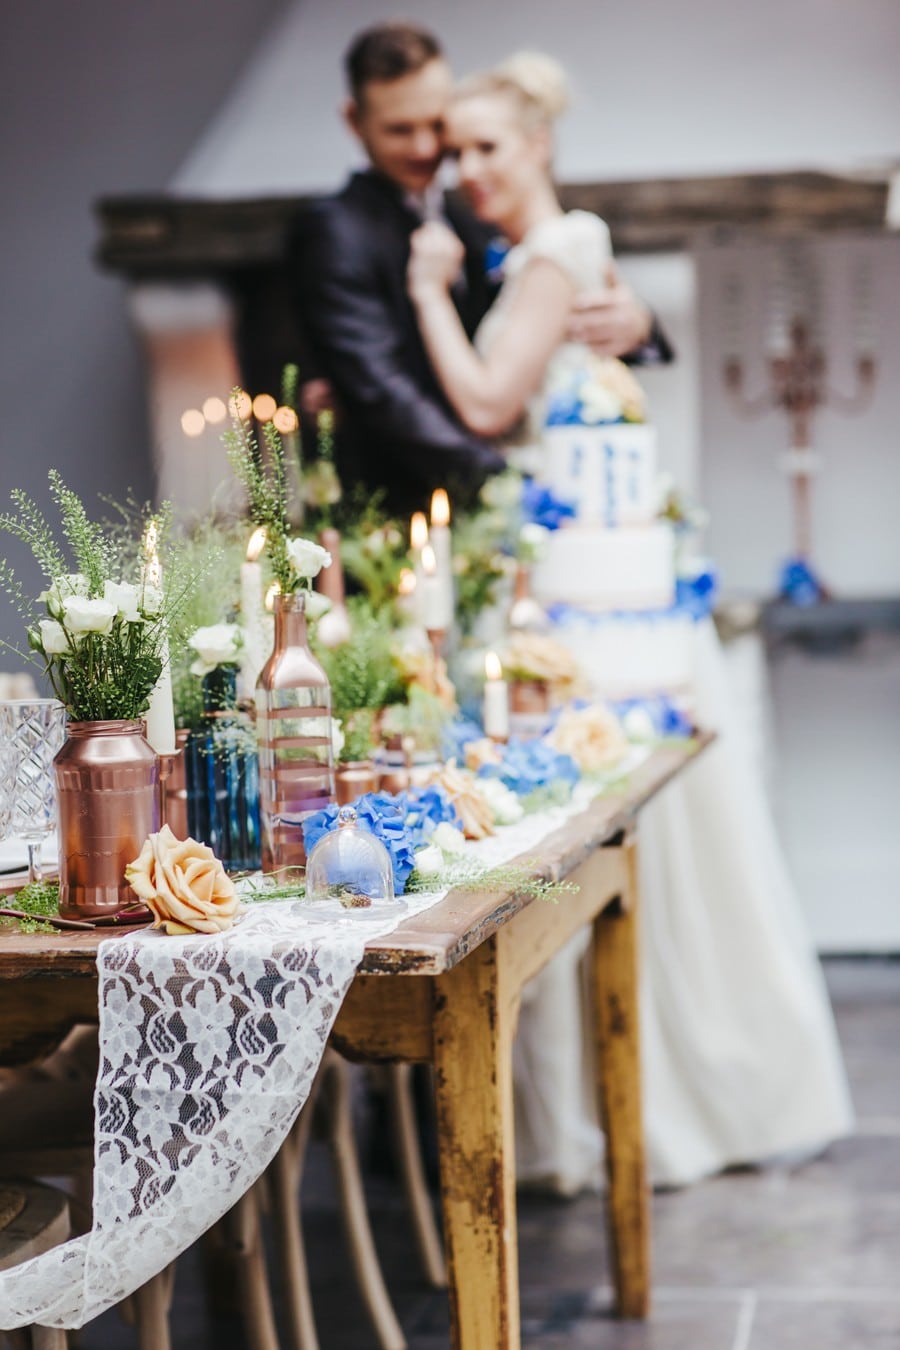 Inspiration für eine herbstliche Hochzeit in den Farben Blau und Kupfer